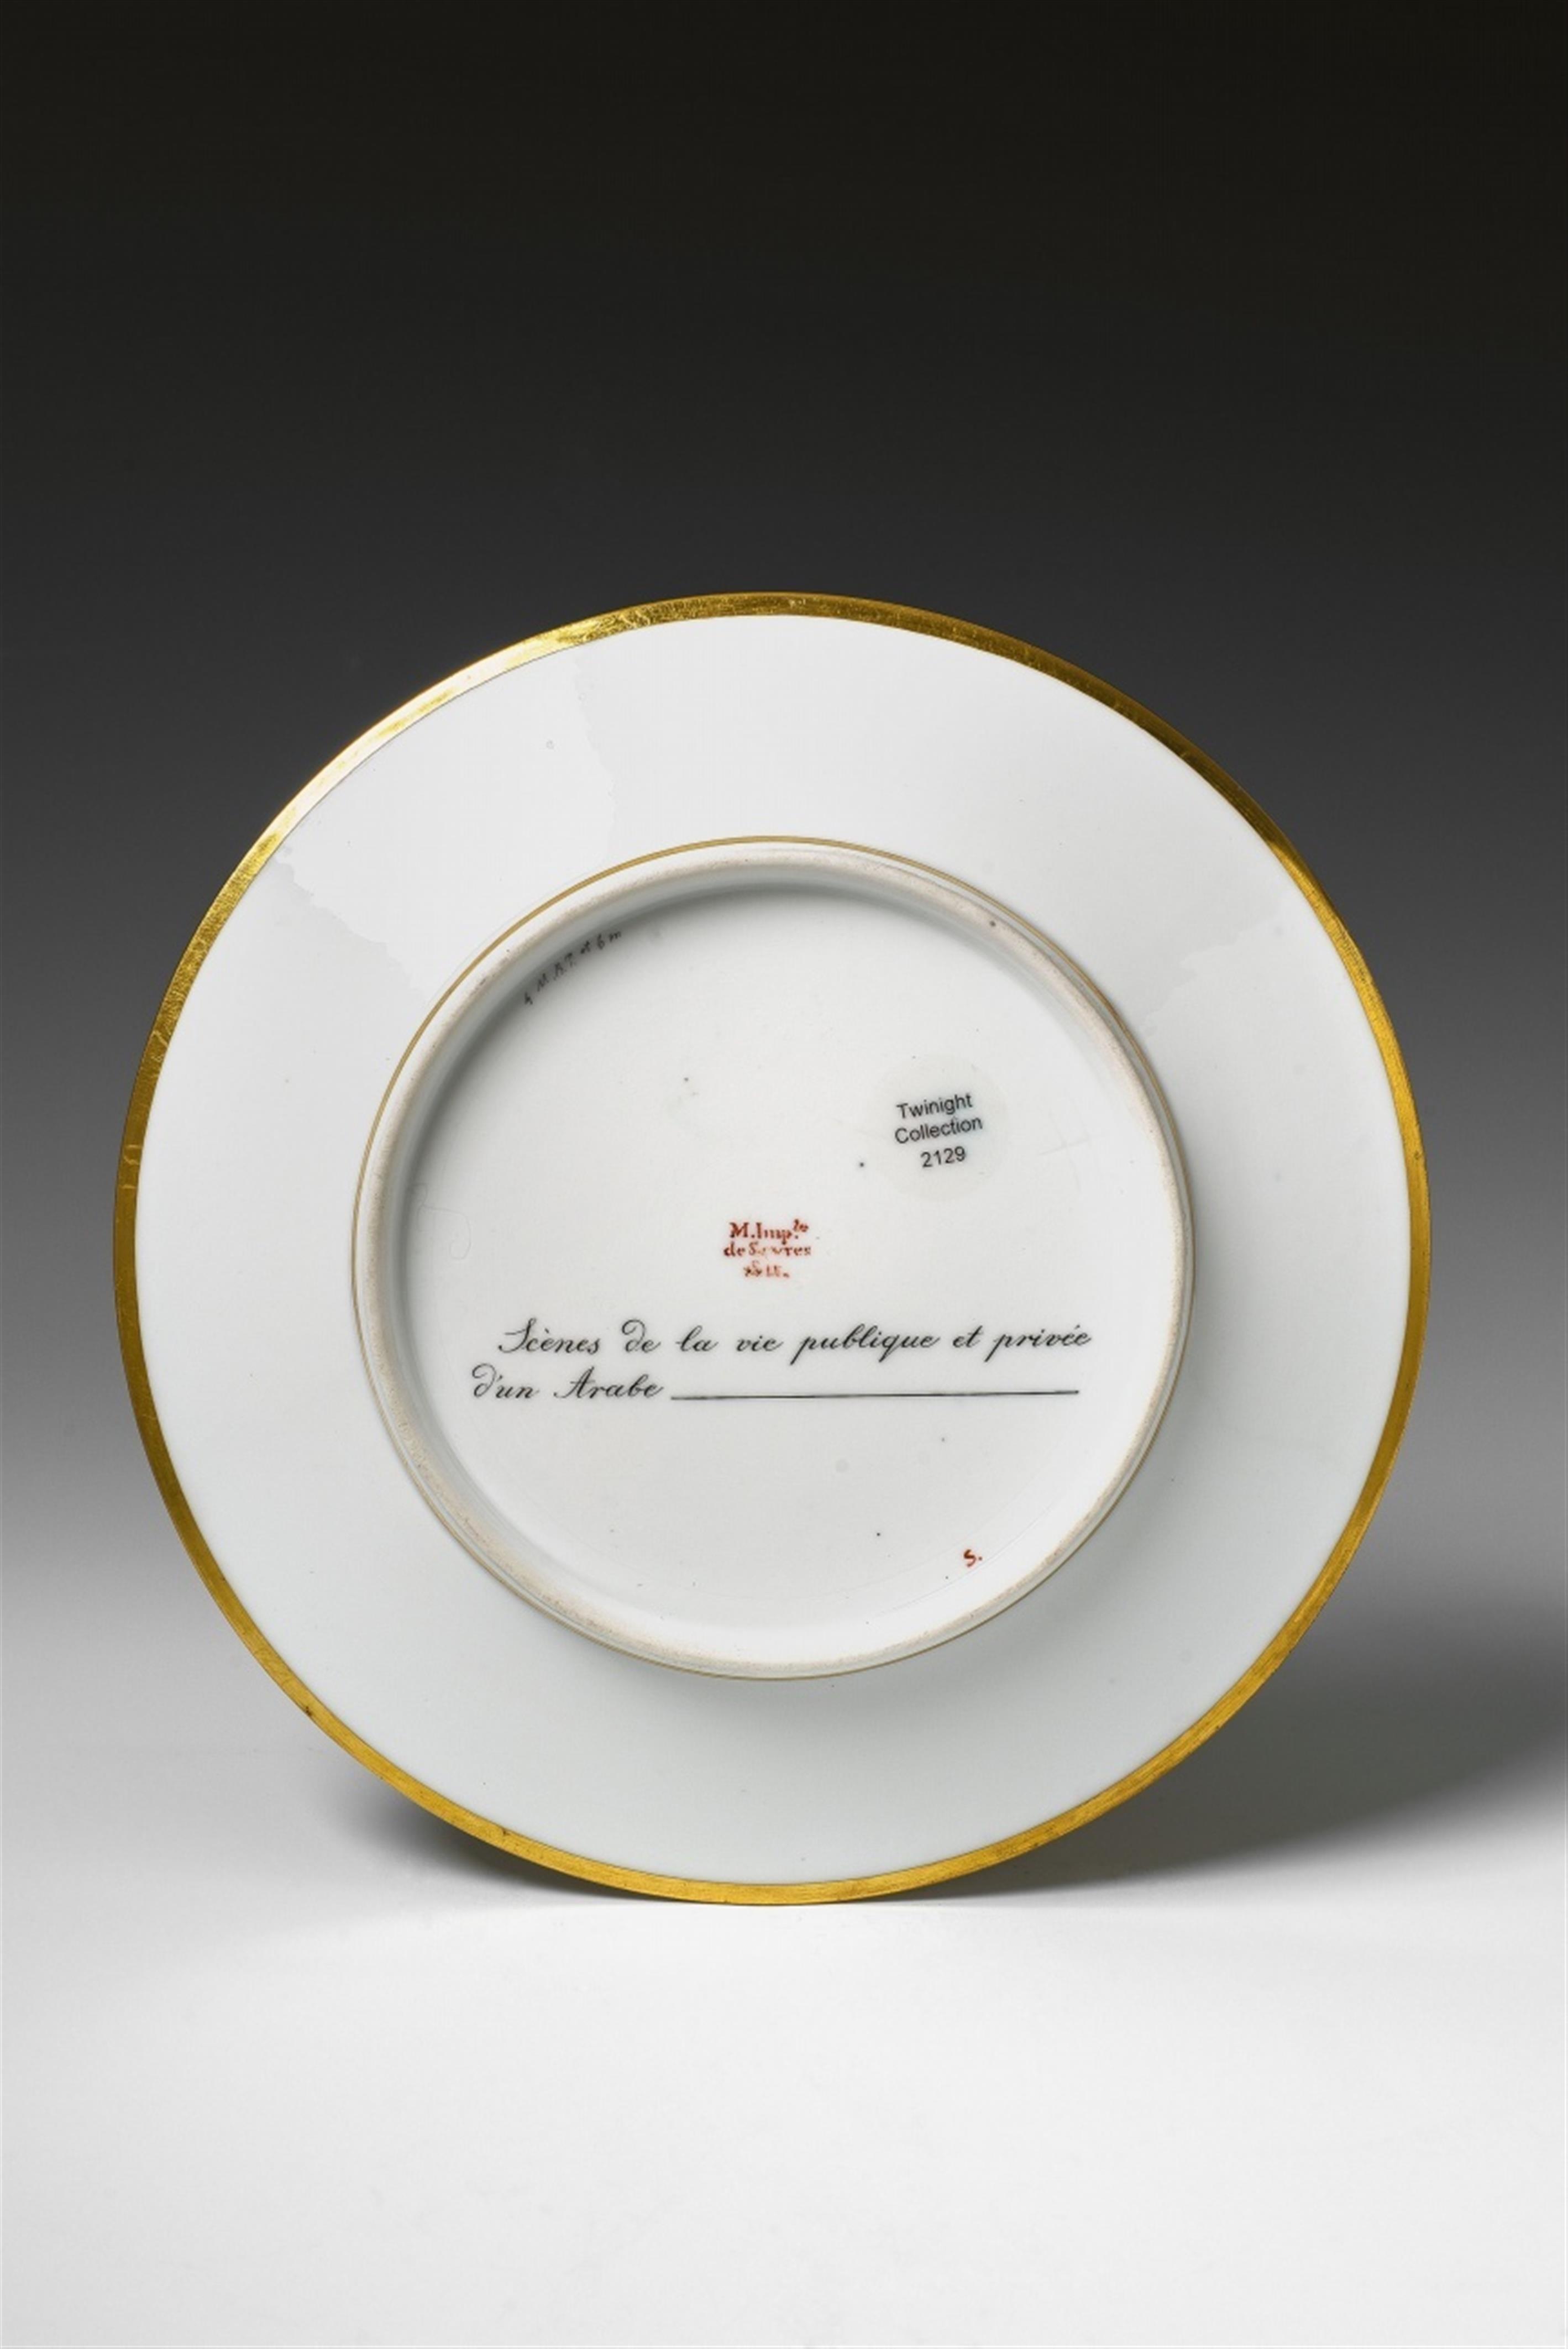 A Sèvres porcelain plate "Scènes de la vie publique et privée d'un Arabe" - image-2